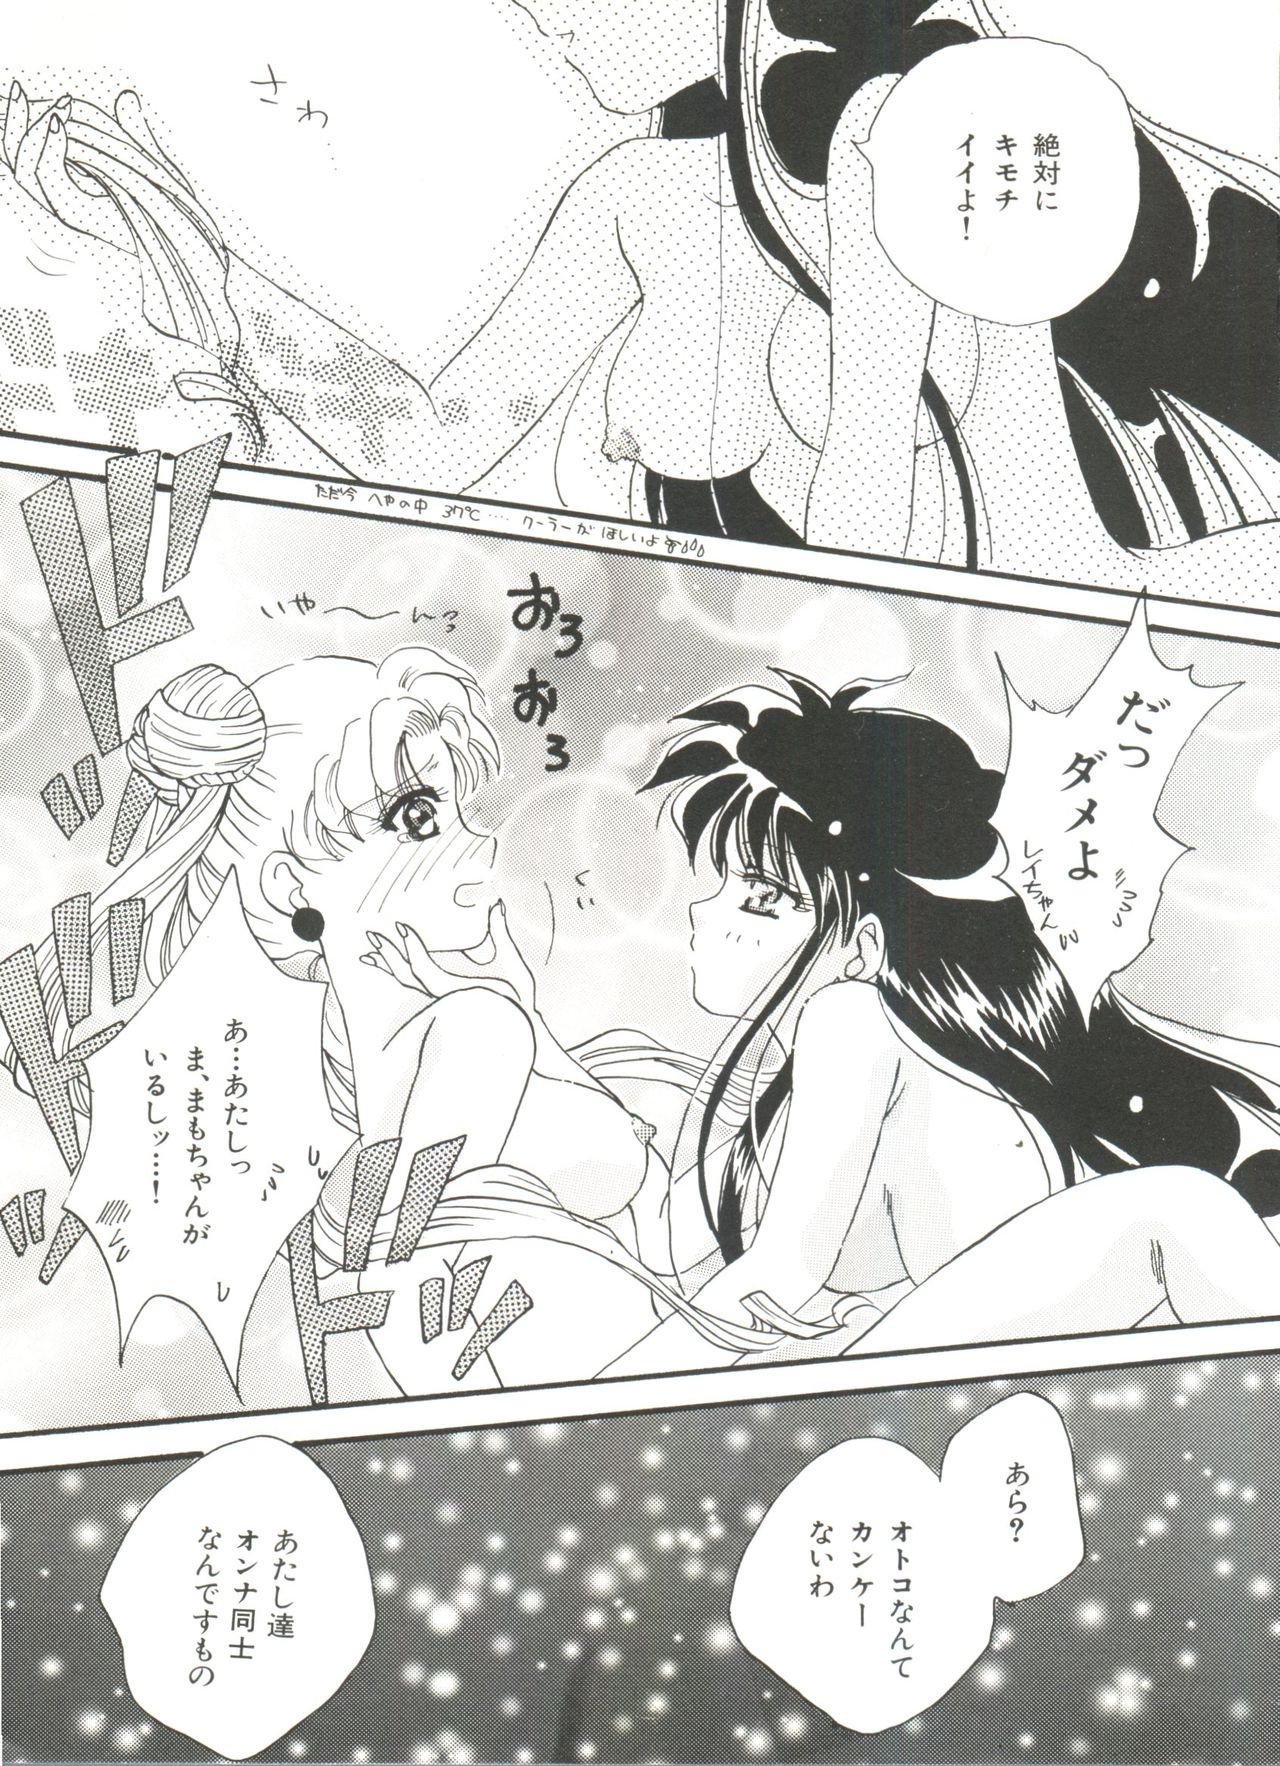 [Anthology] Bishoujo Doujinshi Anthology 18 - Moon Paradise 11 Tsuki no Rakuen (Bishoujo Senshi Sailor Moon) page 11 full